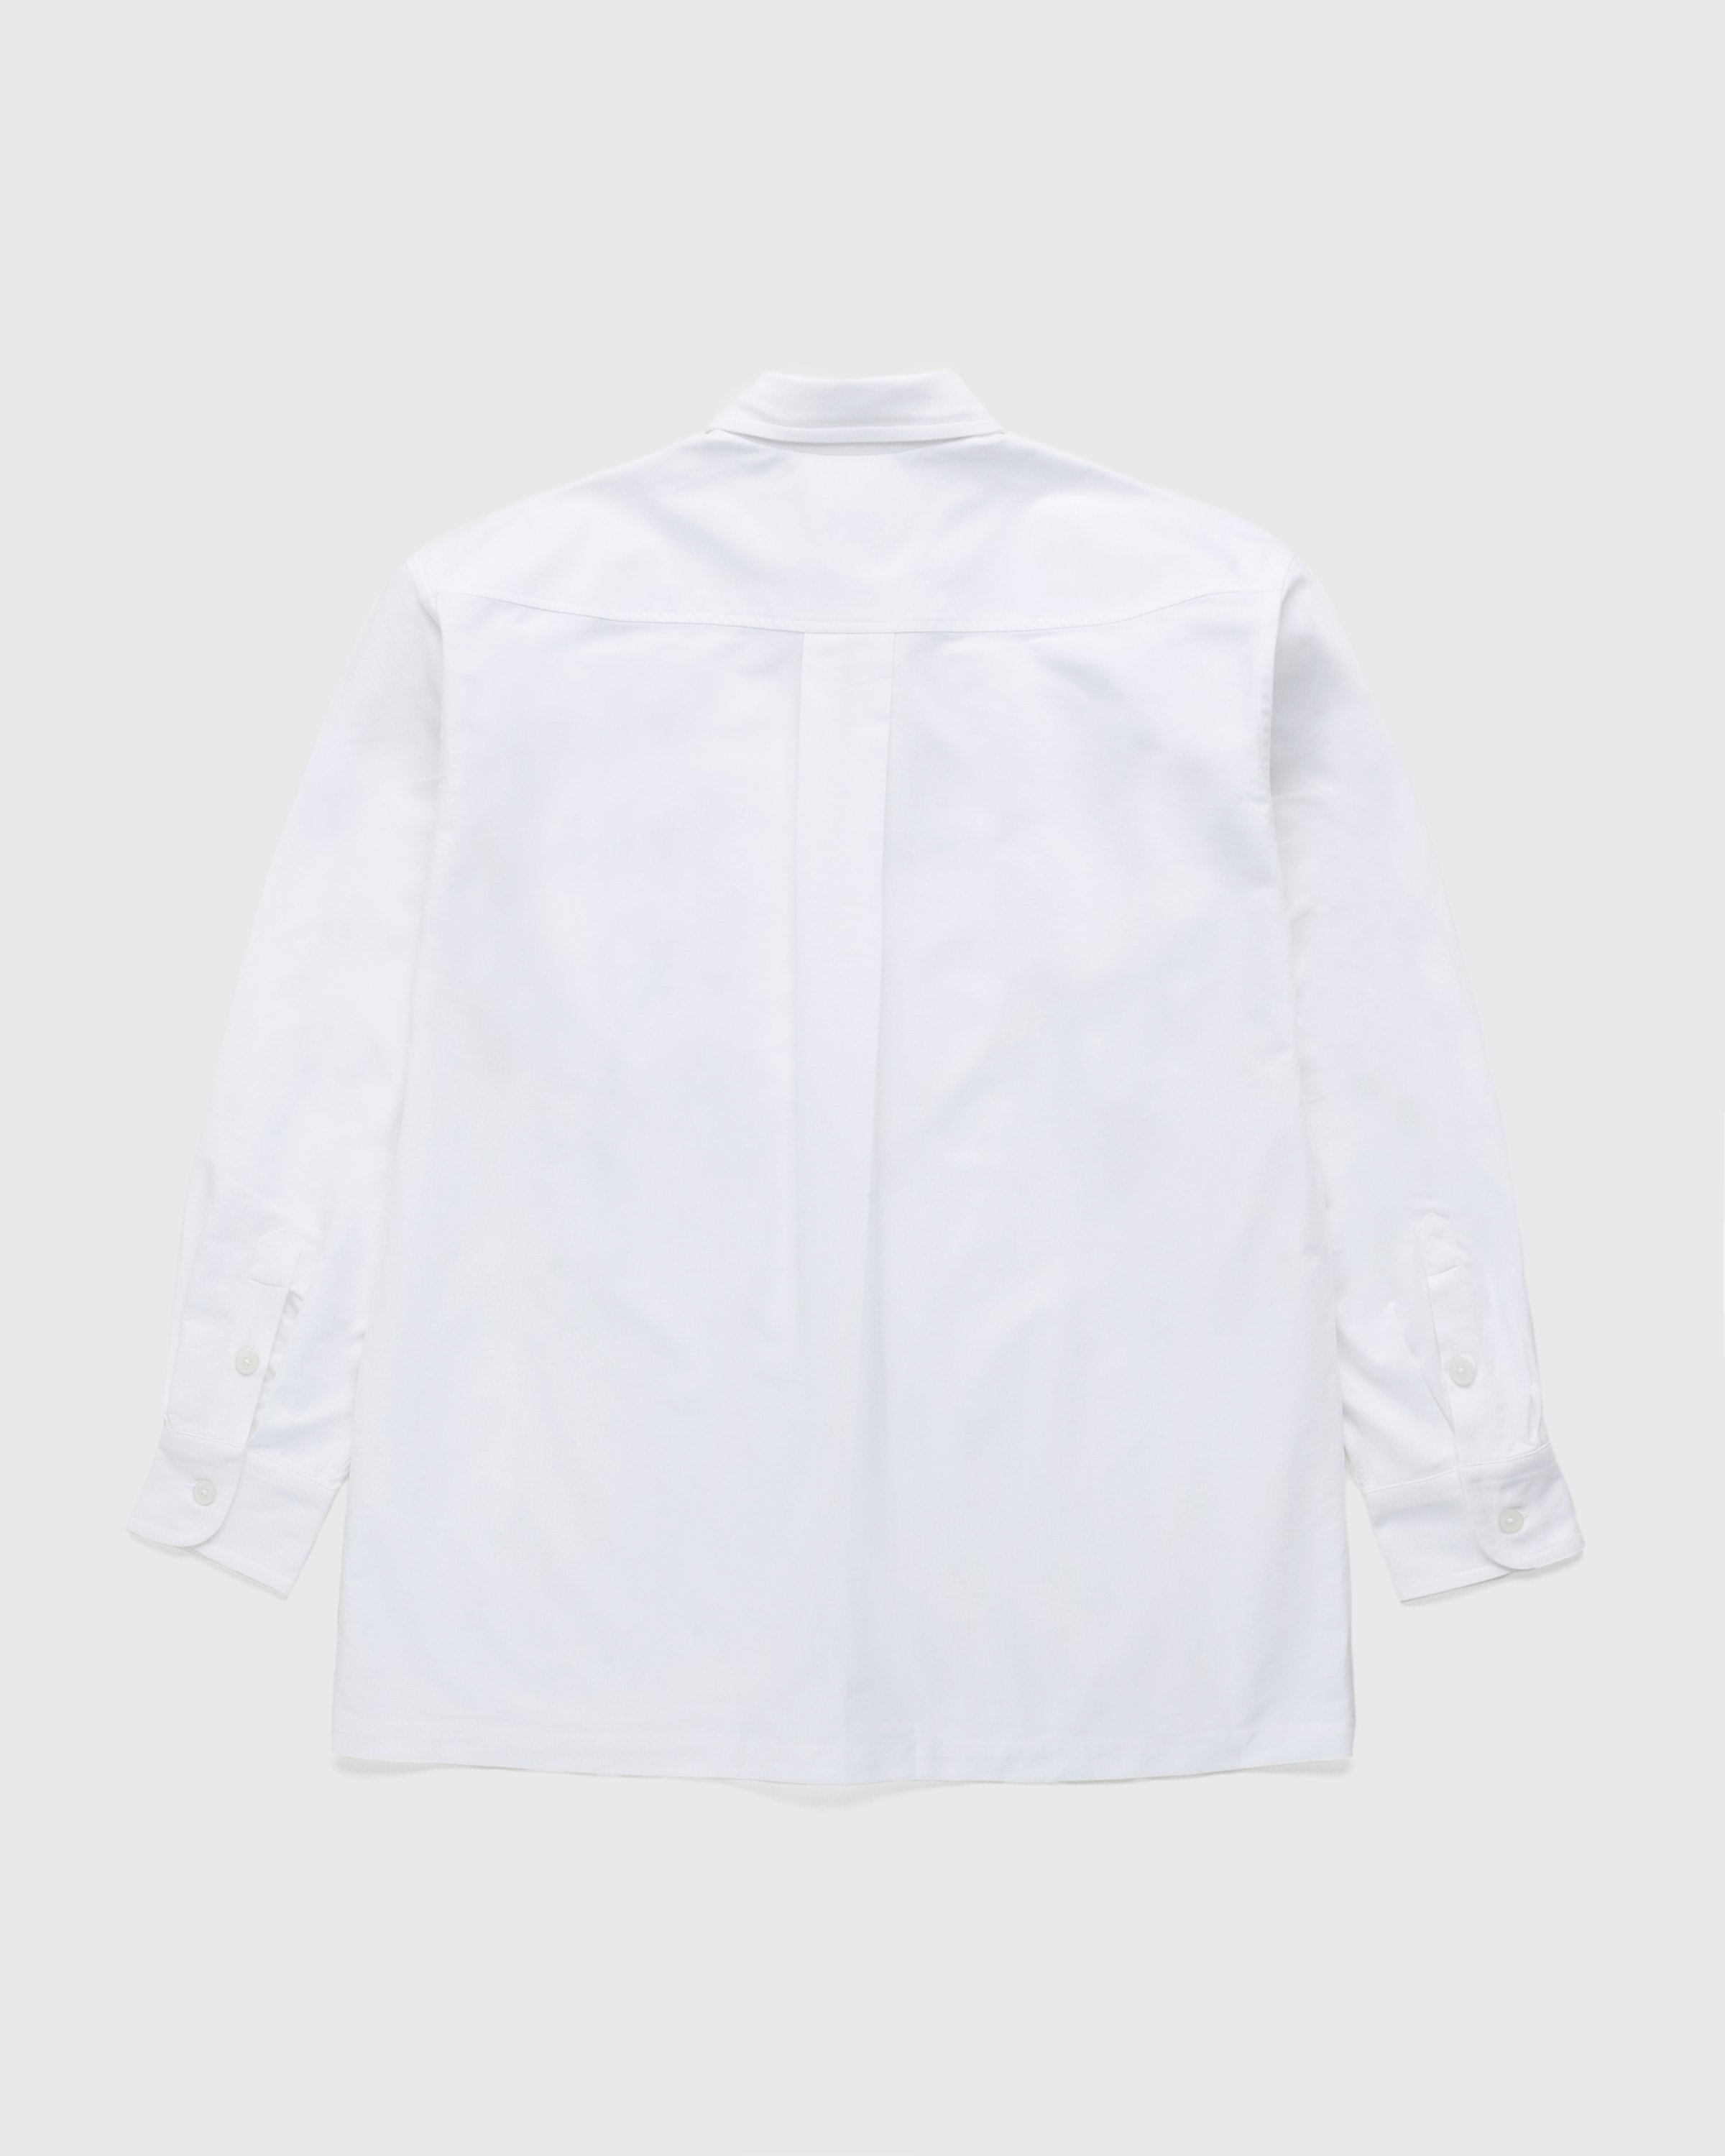 Kenzo - Boke Flower Crest Overshirt White - Clothing - White - Image 2